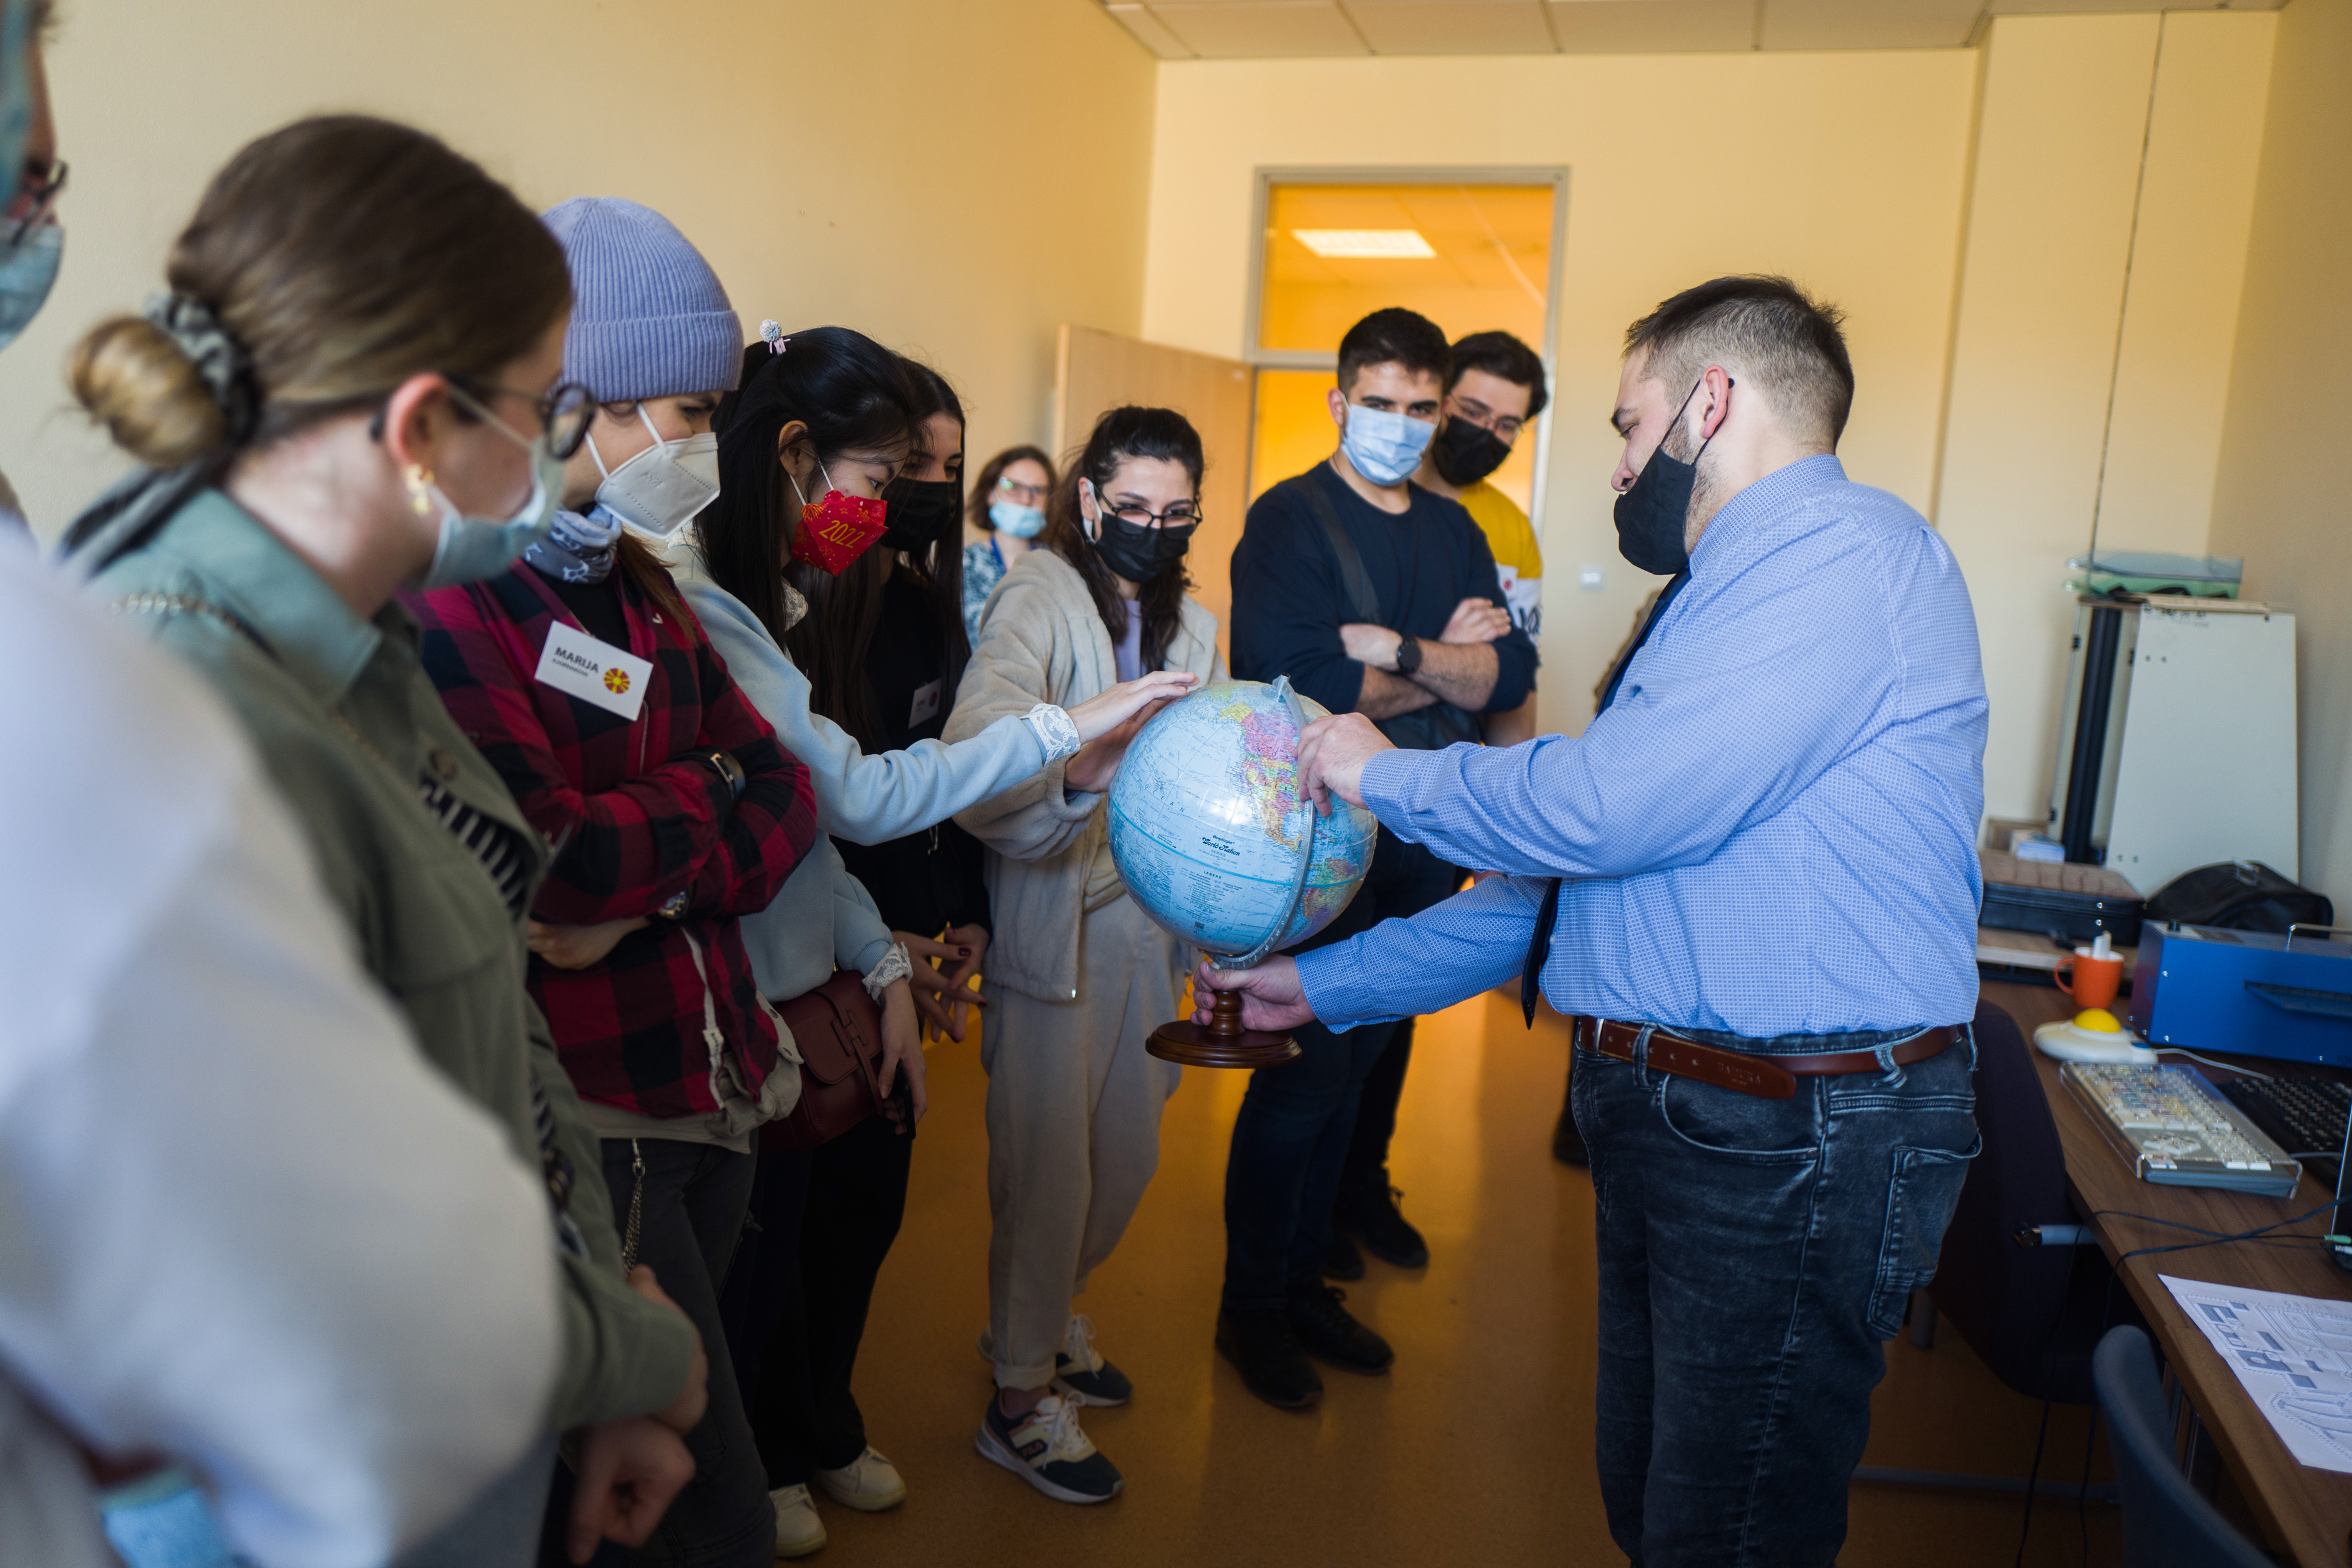 Przewodnik trzyma globus dla osób niewidomych. Otaczają go studenci. Kilka z nich dotyka globusu.